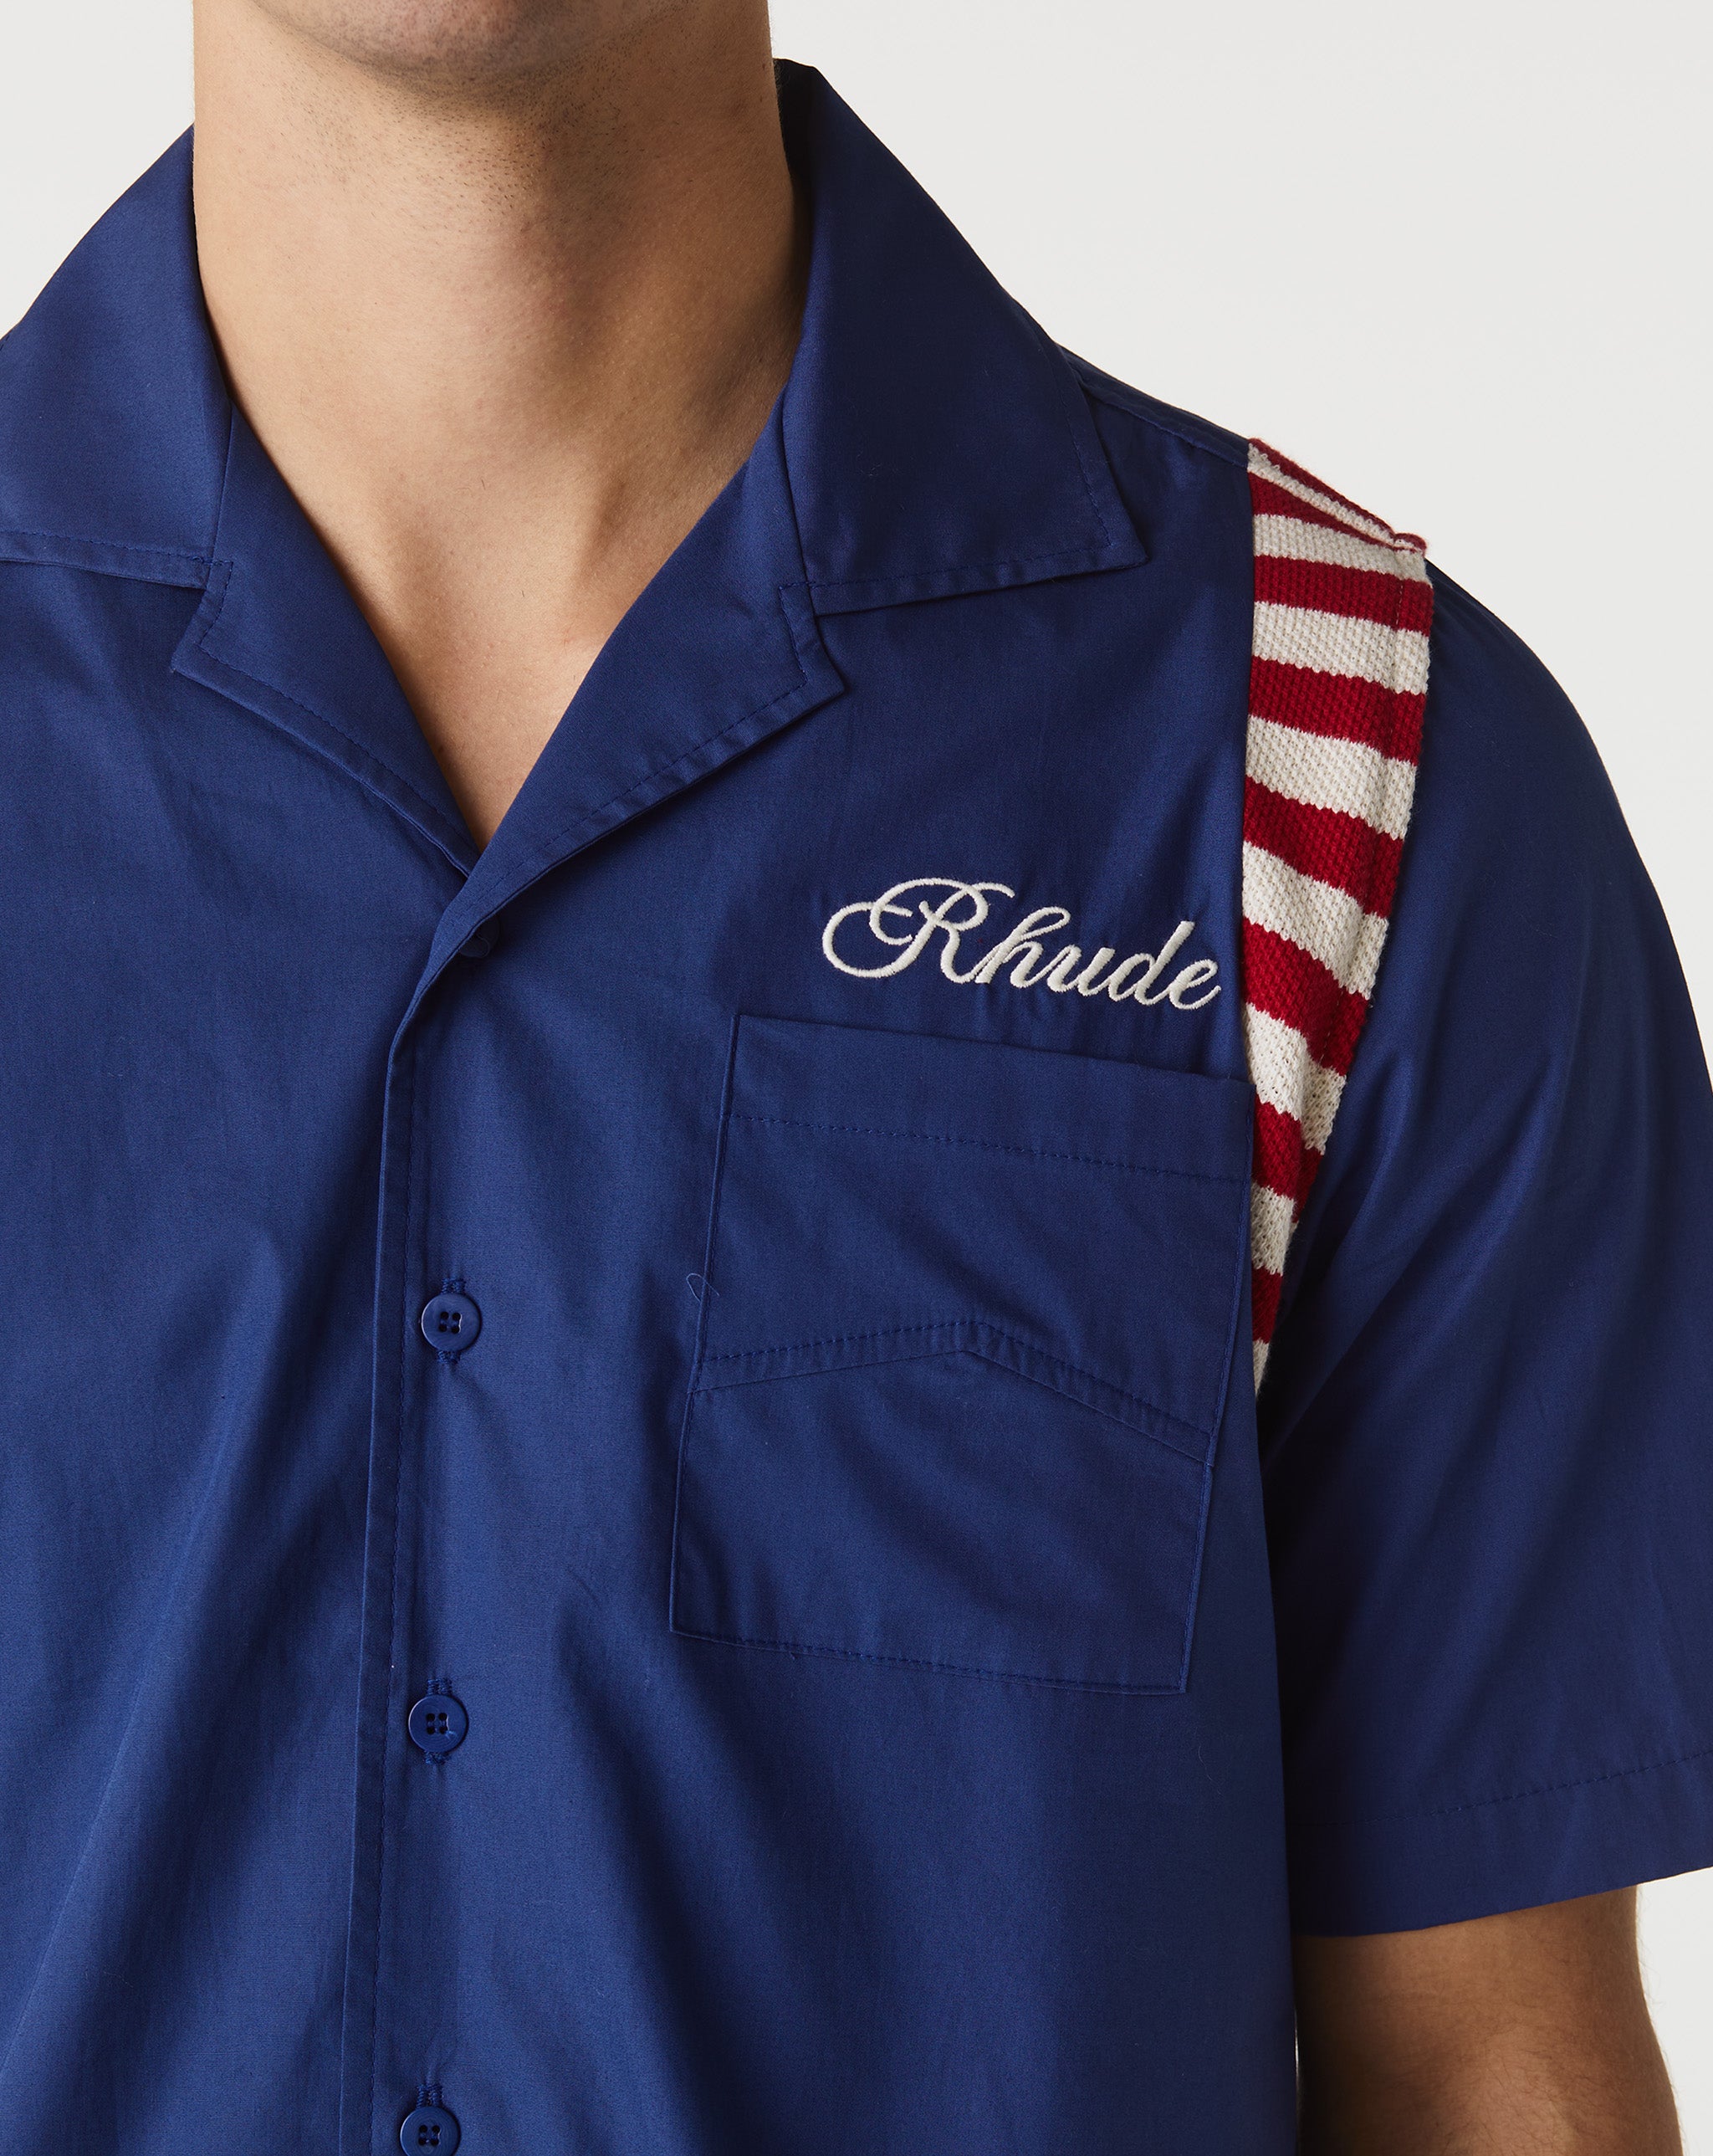 Rhude adidas golf tee shirt fs6759 navy  - Cheap Urlfreeze Jordan outlet